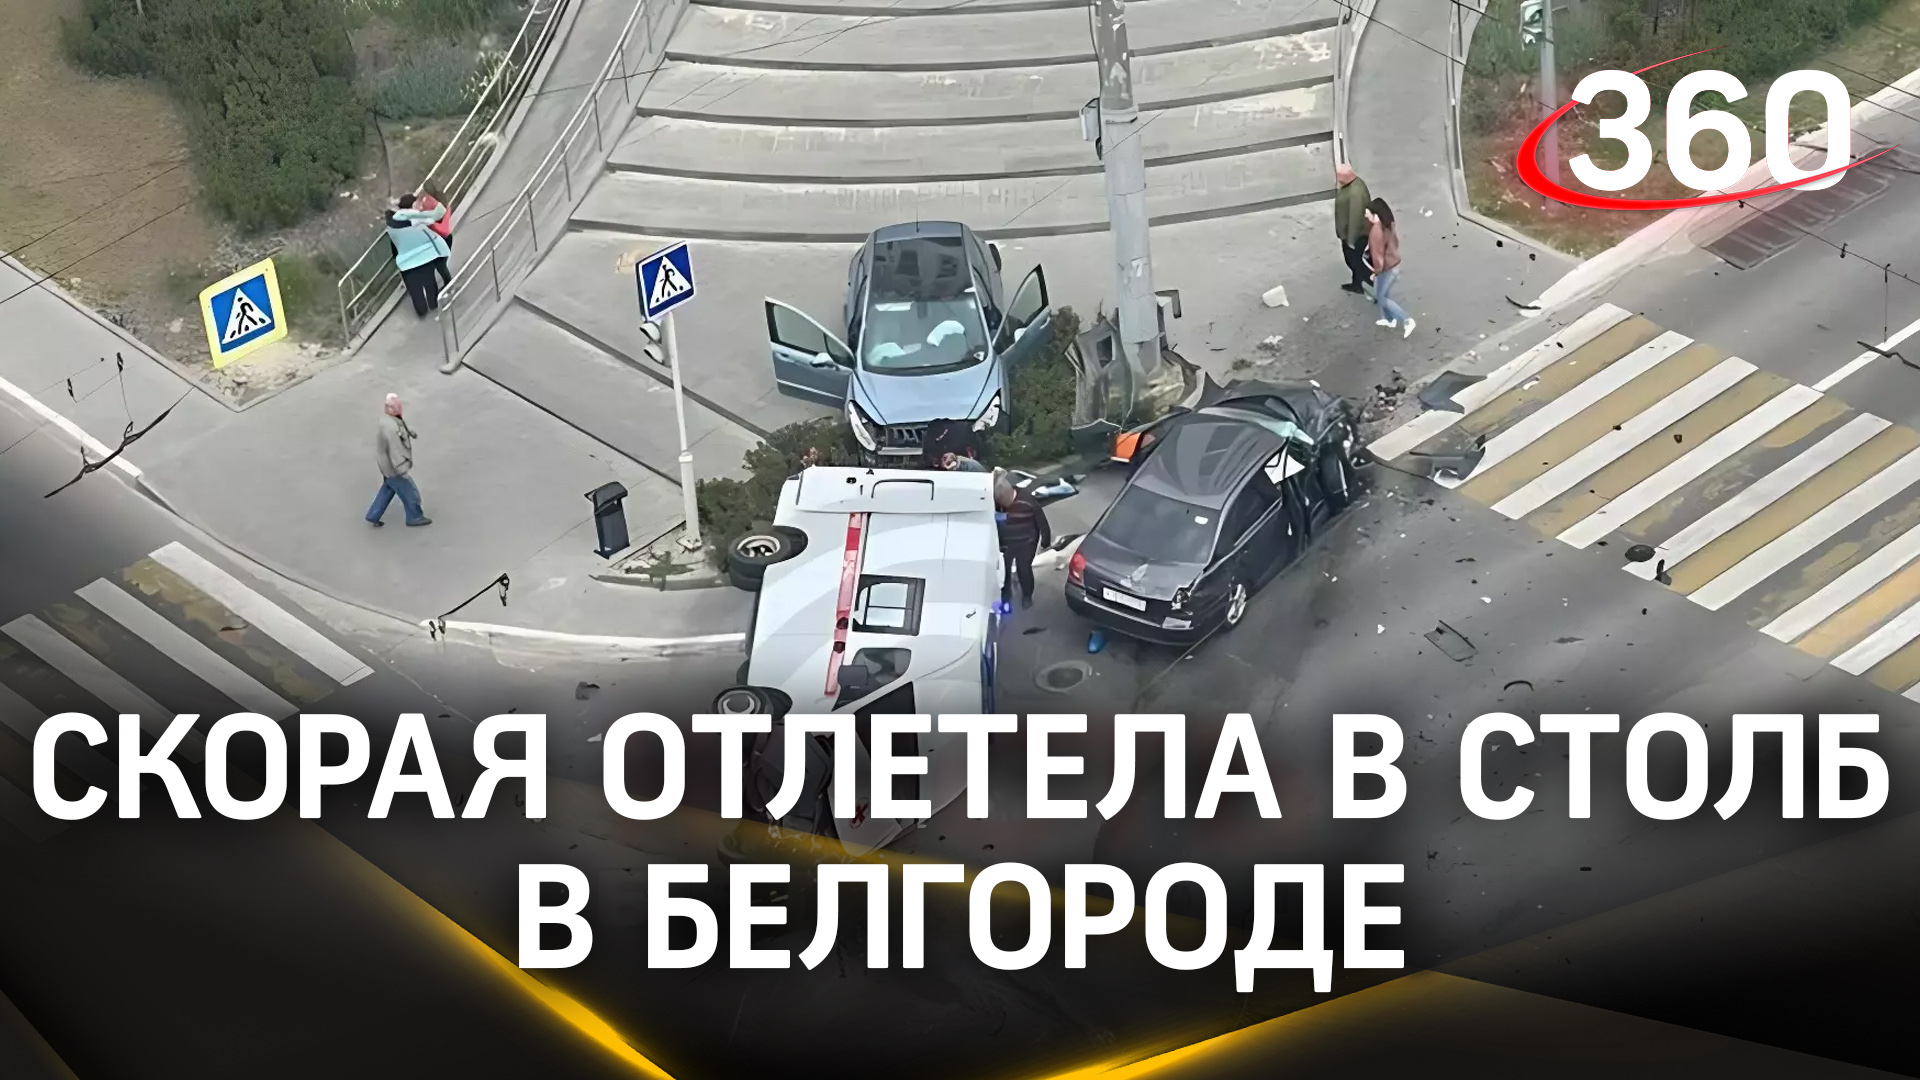 Скорая отлетела в столб: восемь человек пострадали в страшной аварии в Белгороде